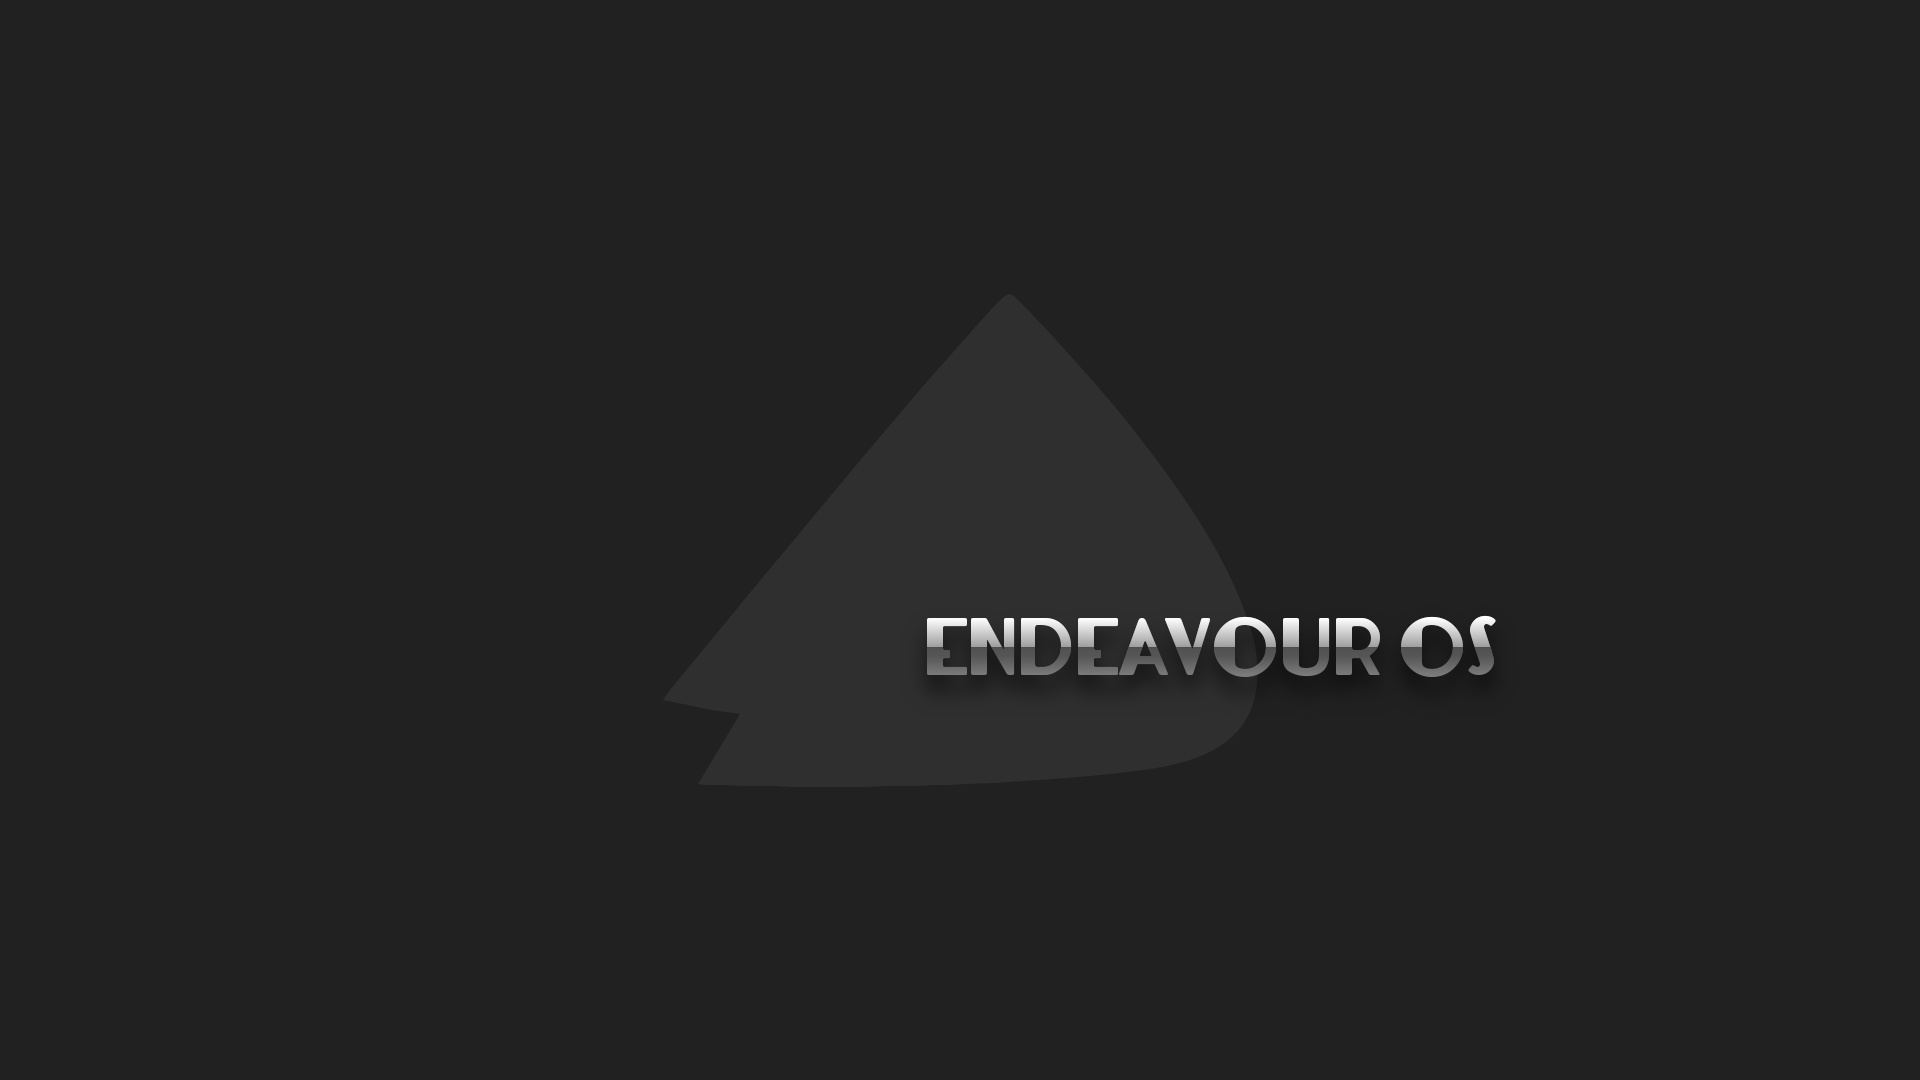 endeavour-os-flat-01